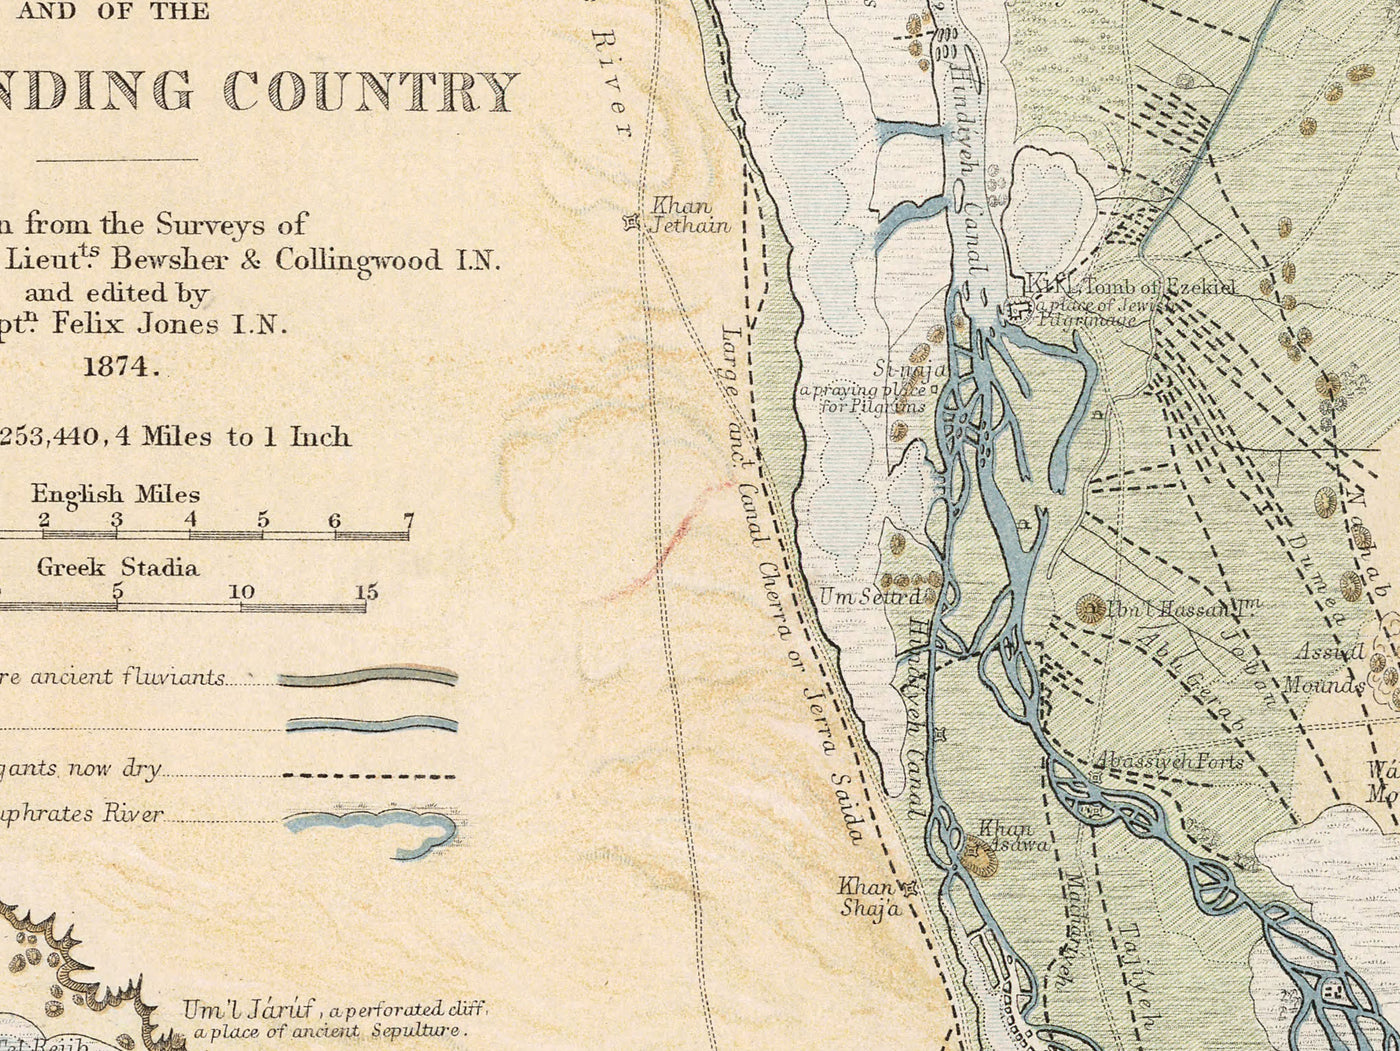 Antiguo mapa de la antigua ciudad de Babilonia en 1874 por William Smith - Iraq, Imperio Babilónico, Río Éufrates, Hillah